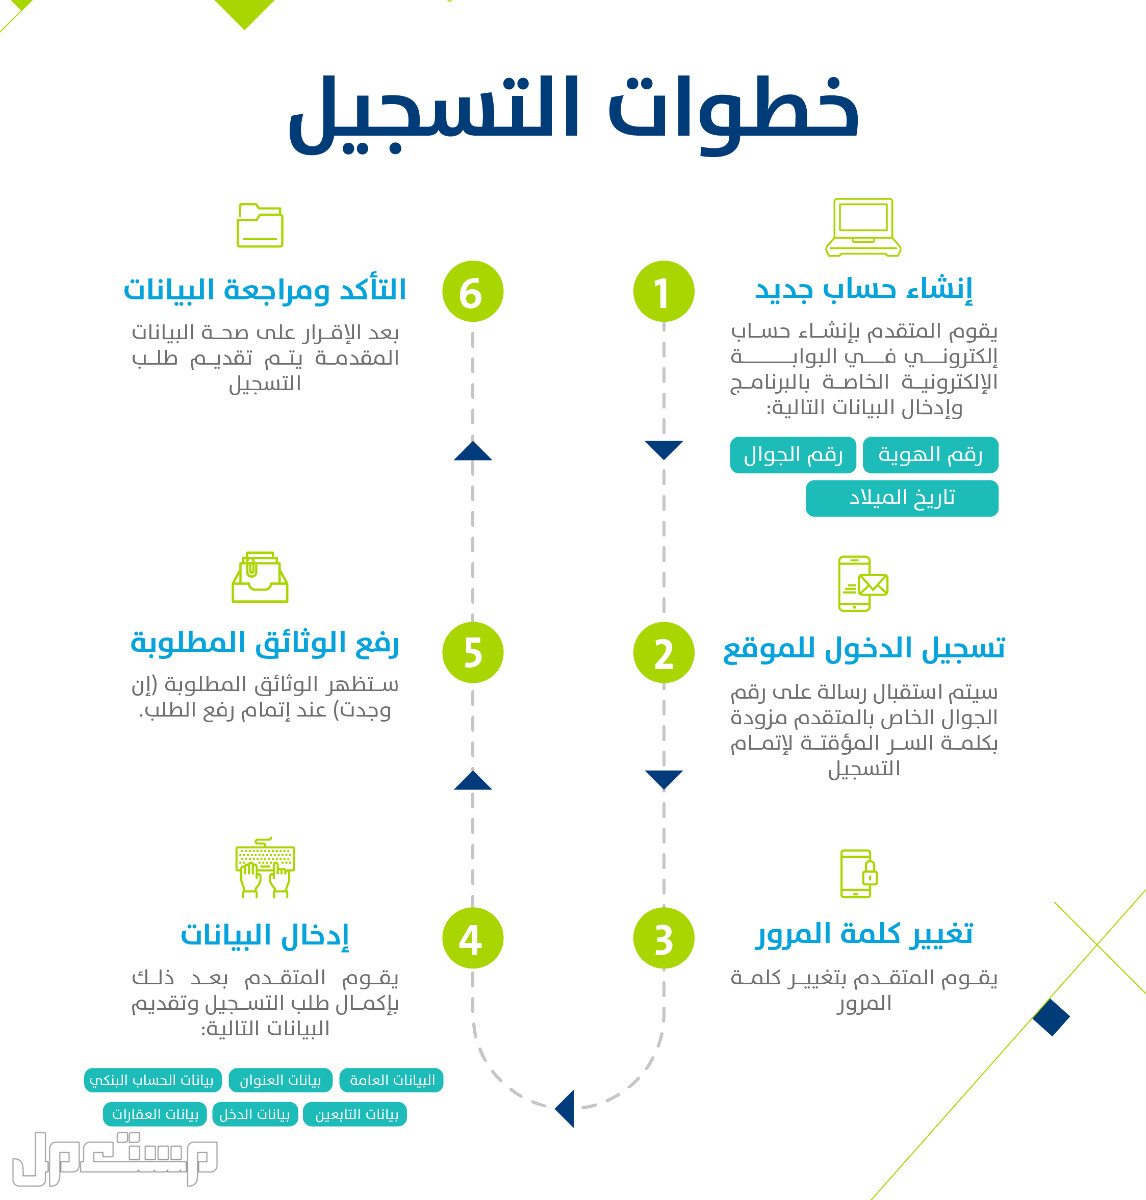 حساب المواطن: تعرف على حقيقة تأثير وثيقة العمل الحر على الدعم في الإمارات العربية المتحدة